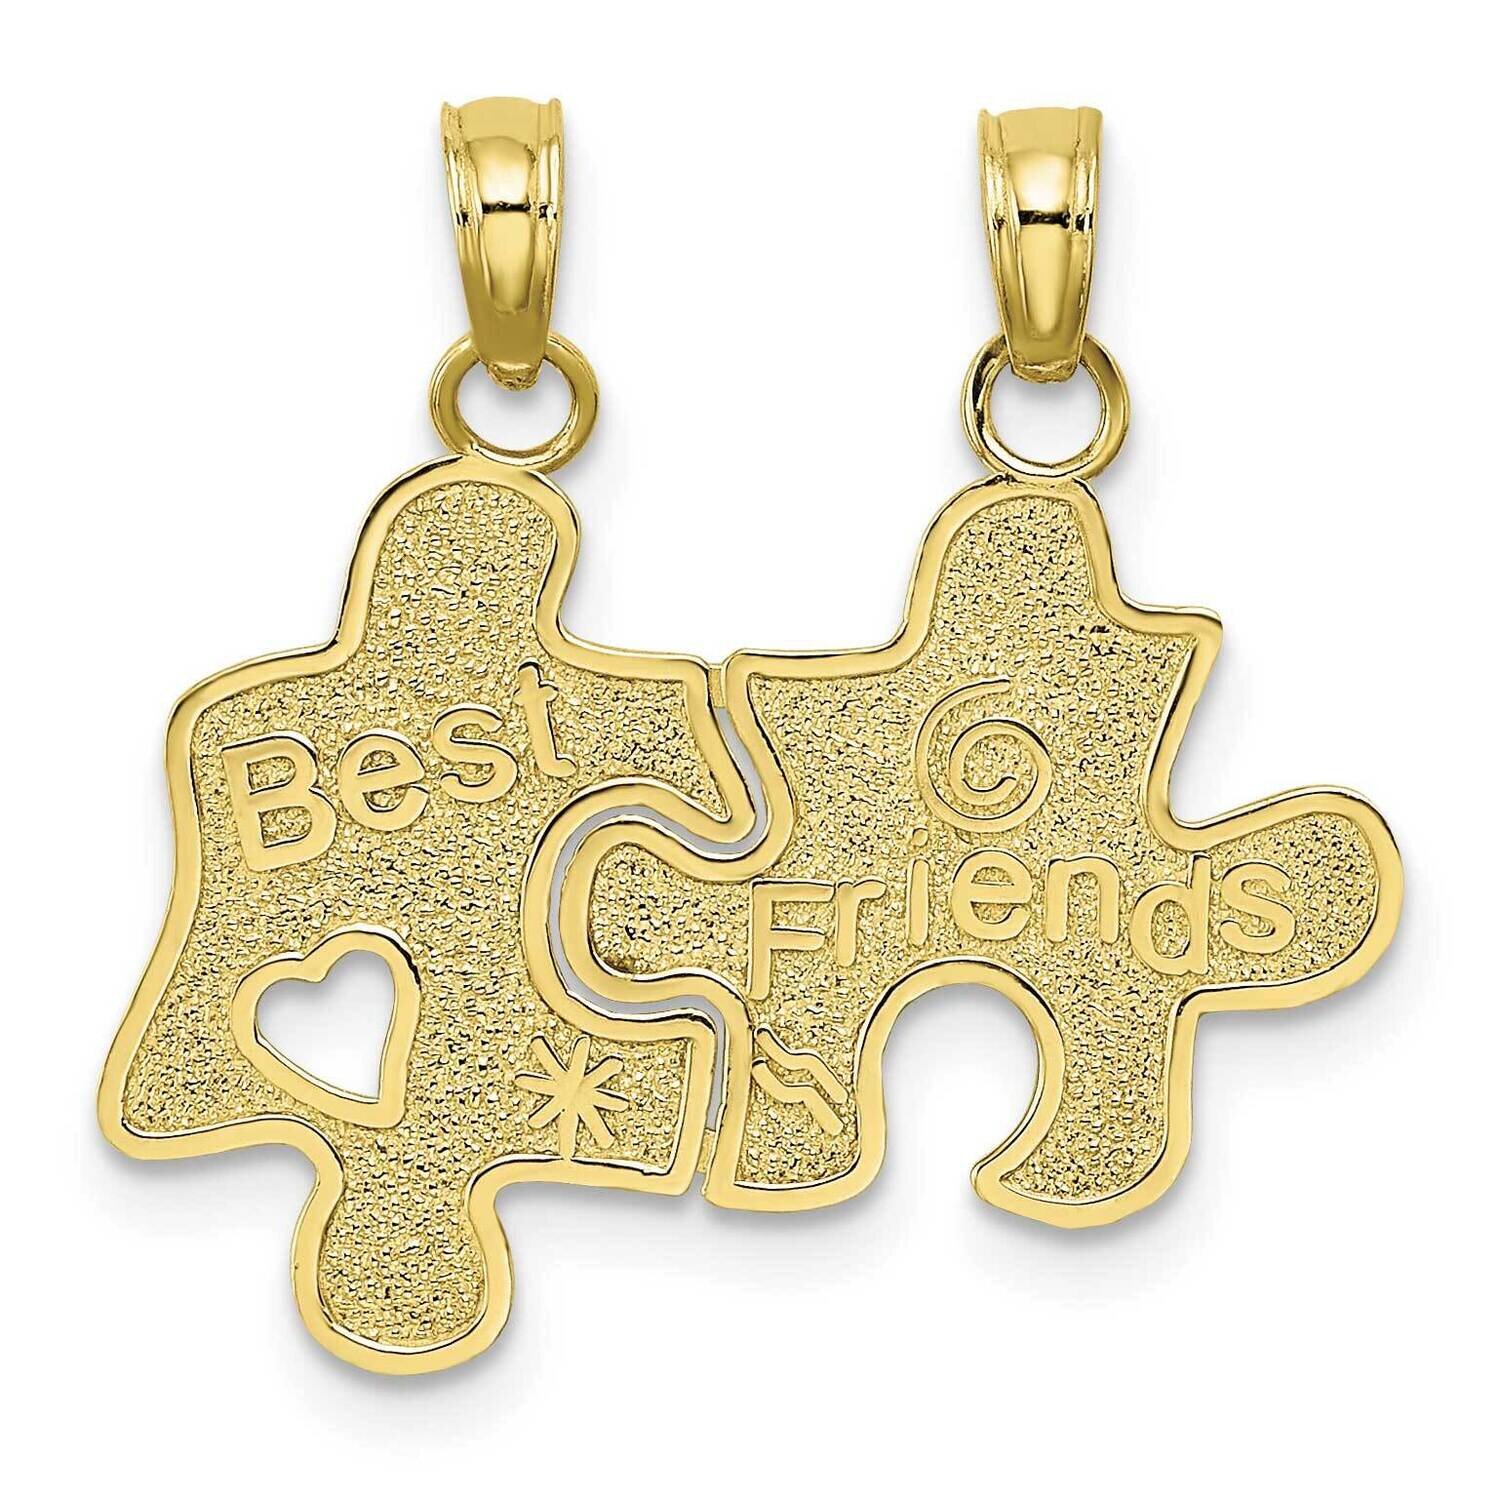 Best Friends Break-A-Part Puzzle Pieces Charm 10k Gold 10K8810